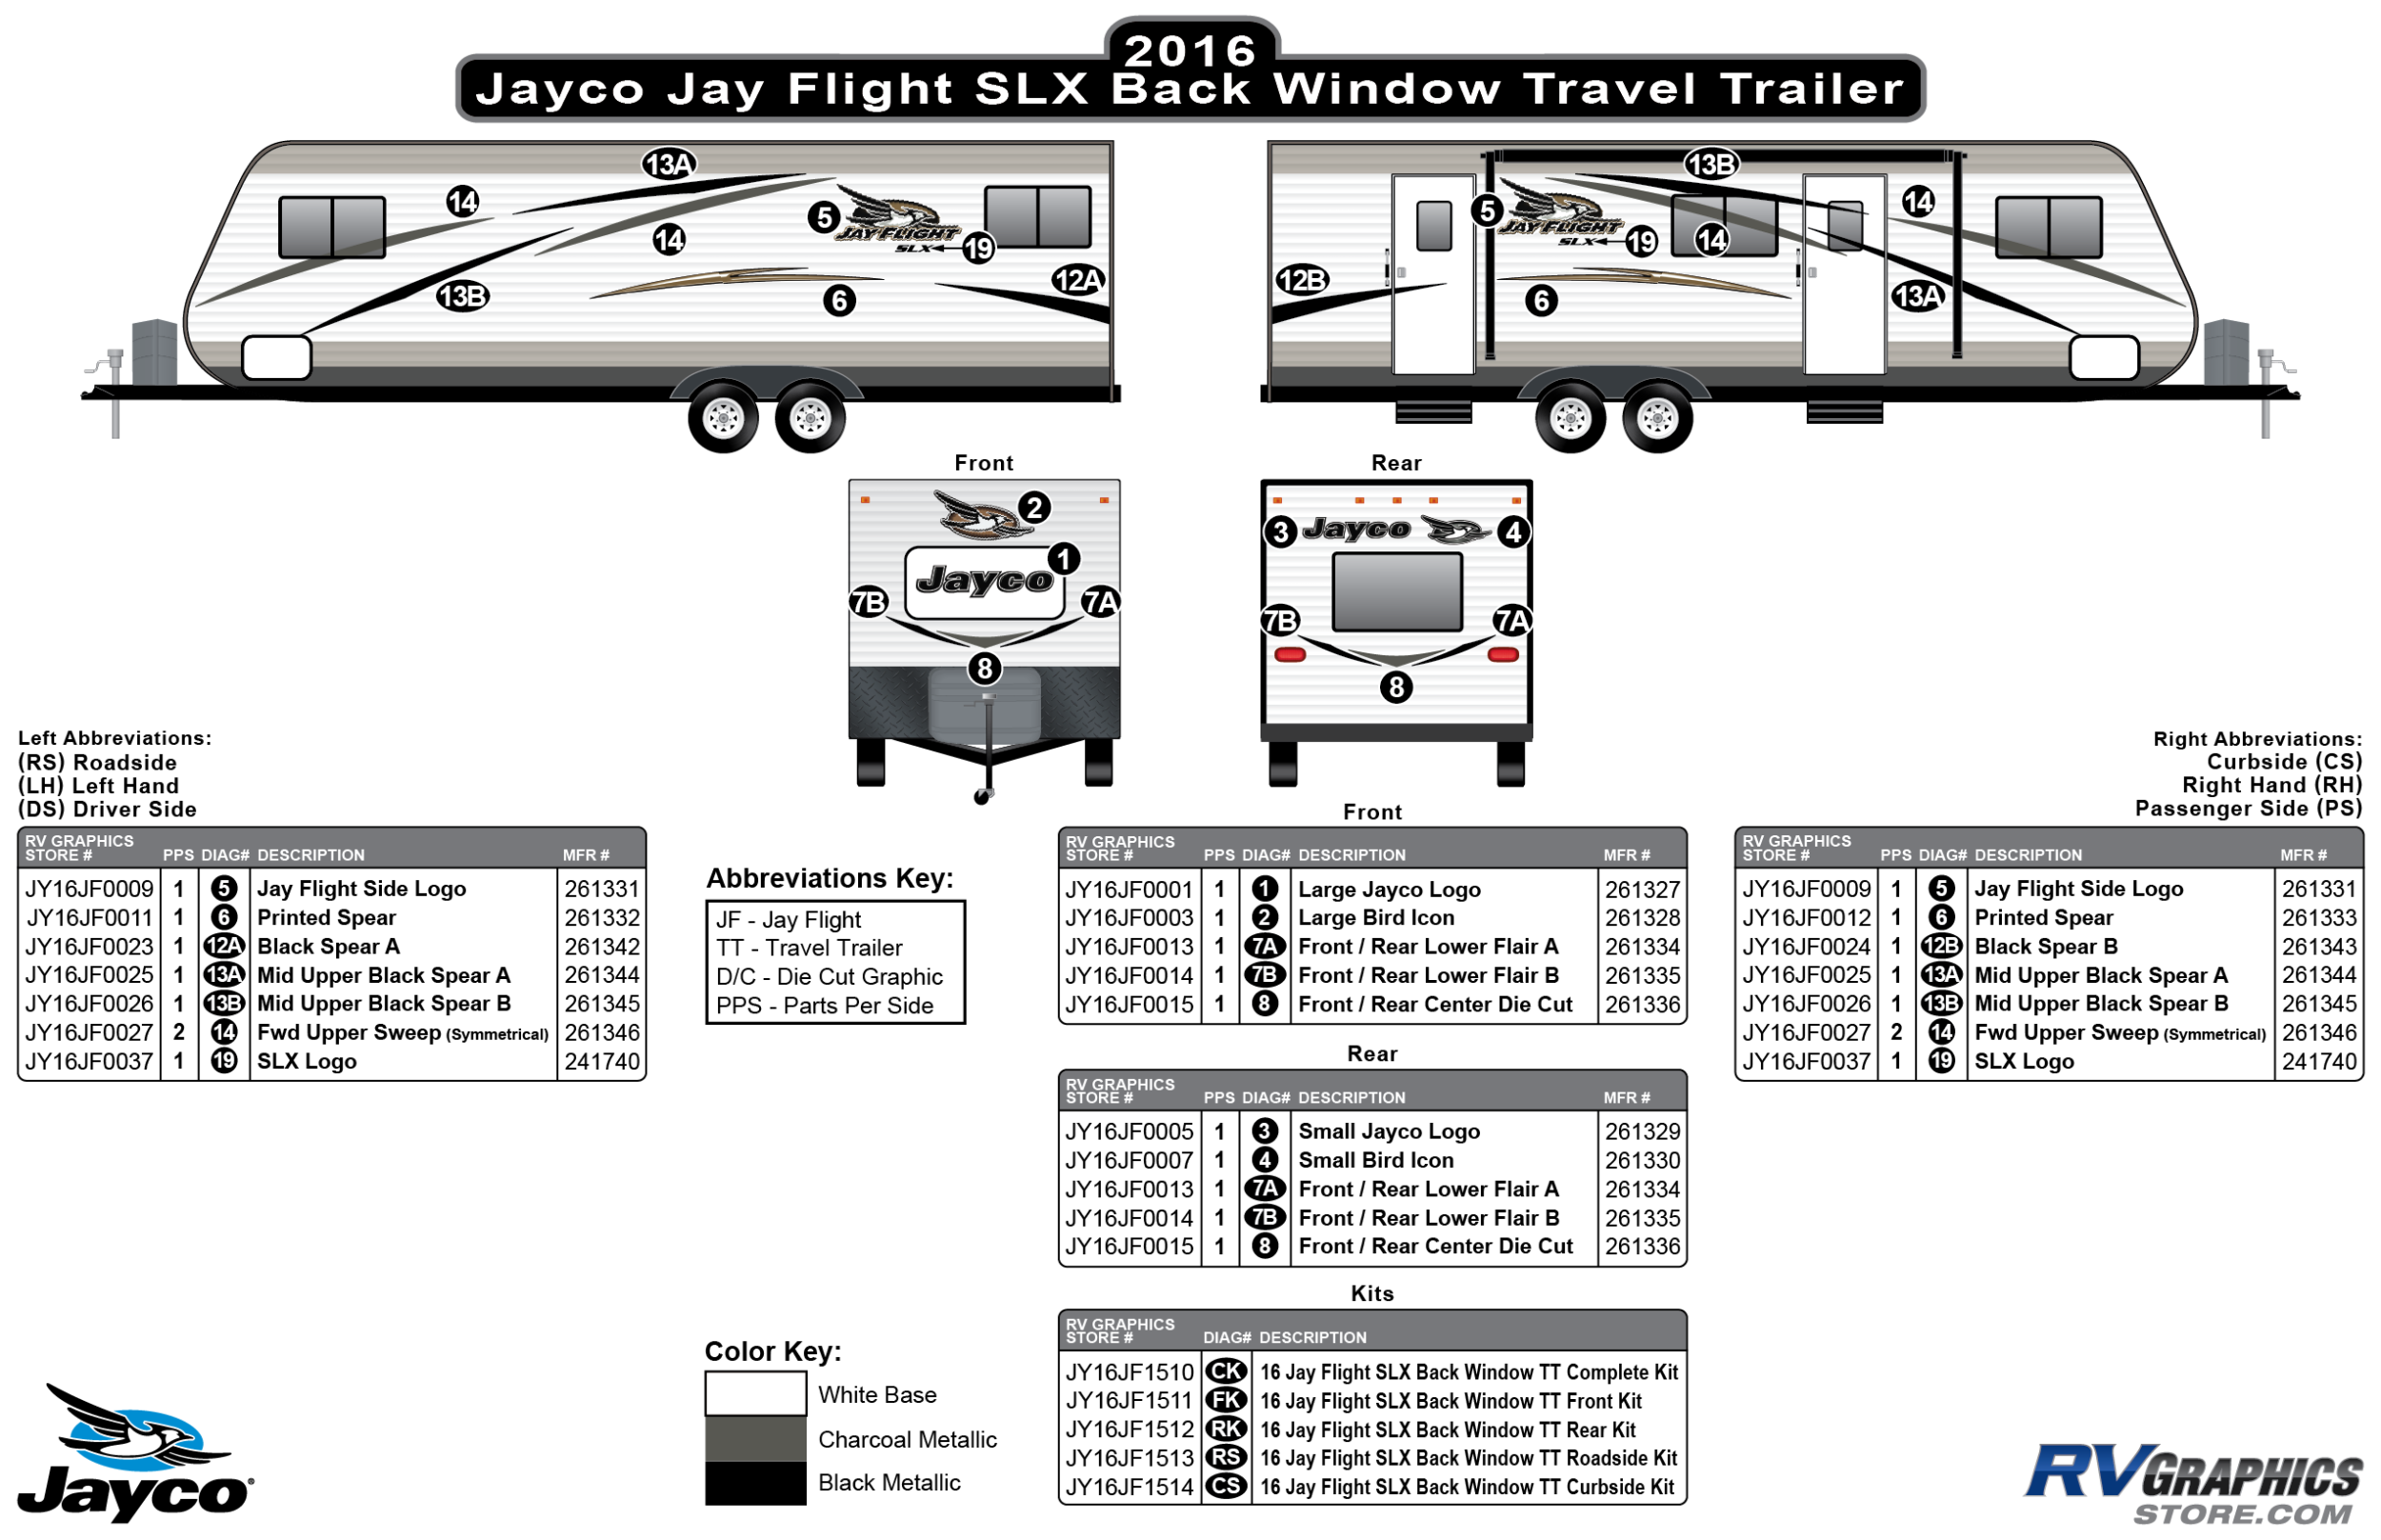 Jay Flight - 2016 Jay Flight SLX Metal TT-Travel Trailer Backwindow